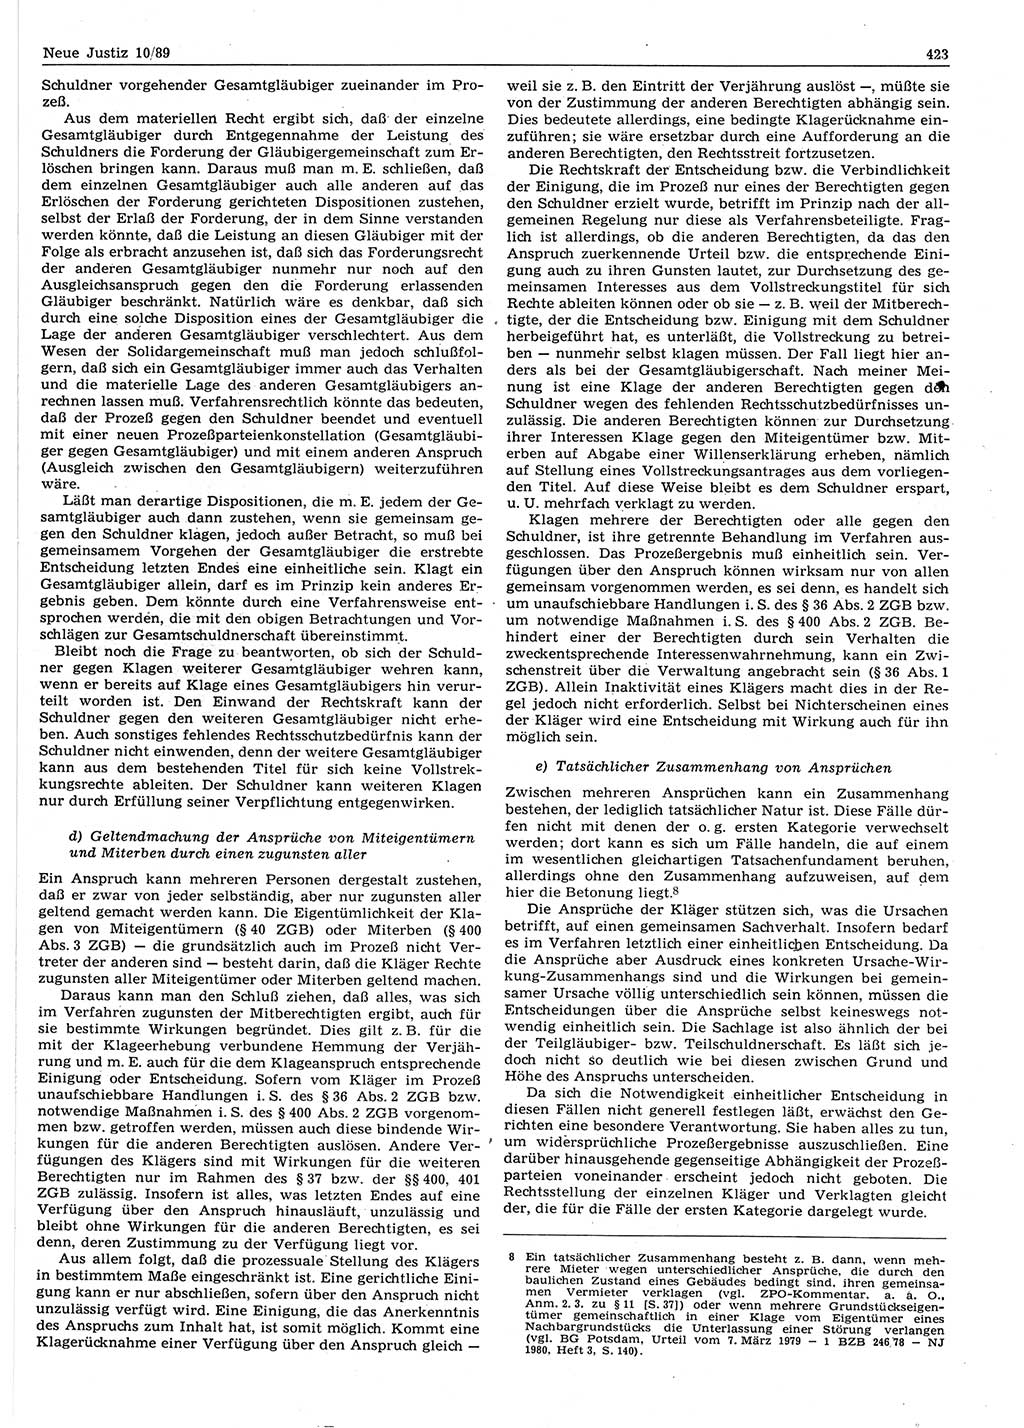 Neue Justiz (NJ), Zeitschrift für sozialistisches Recht und Gesetzlichkeit [Deutsche Demokratische Republik (DDR)], 43. Jahrgang 1989, Seite 423 (NJ DDR 1989, S. 423)